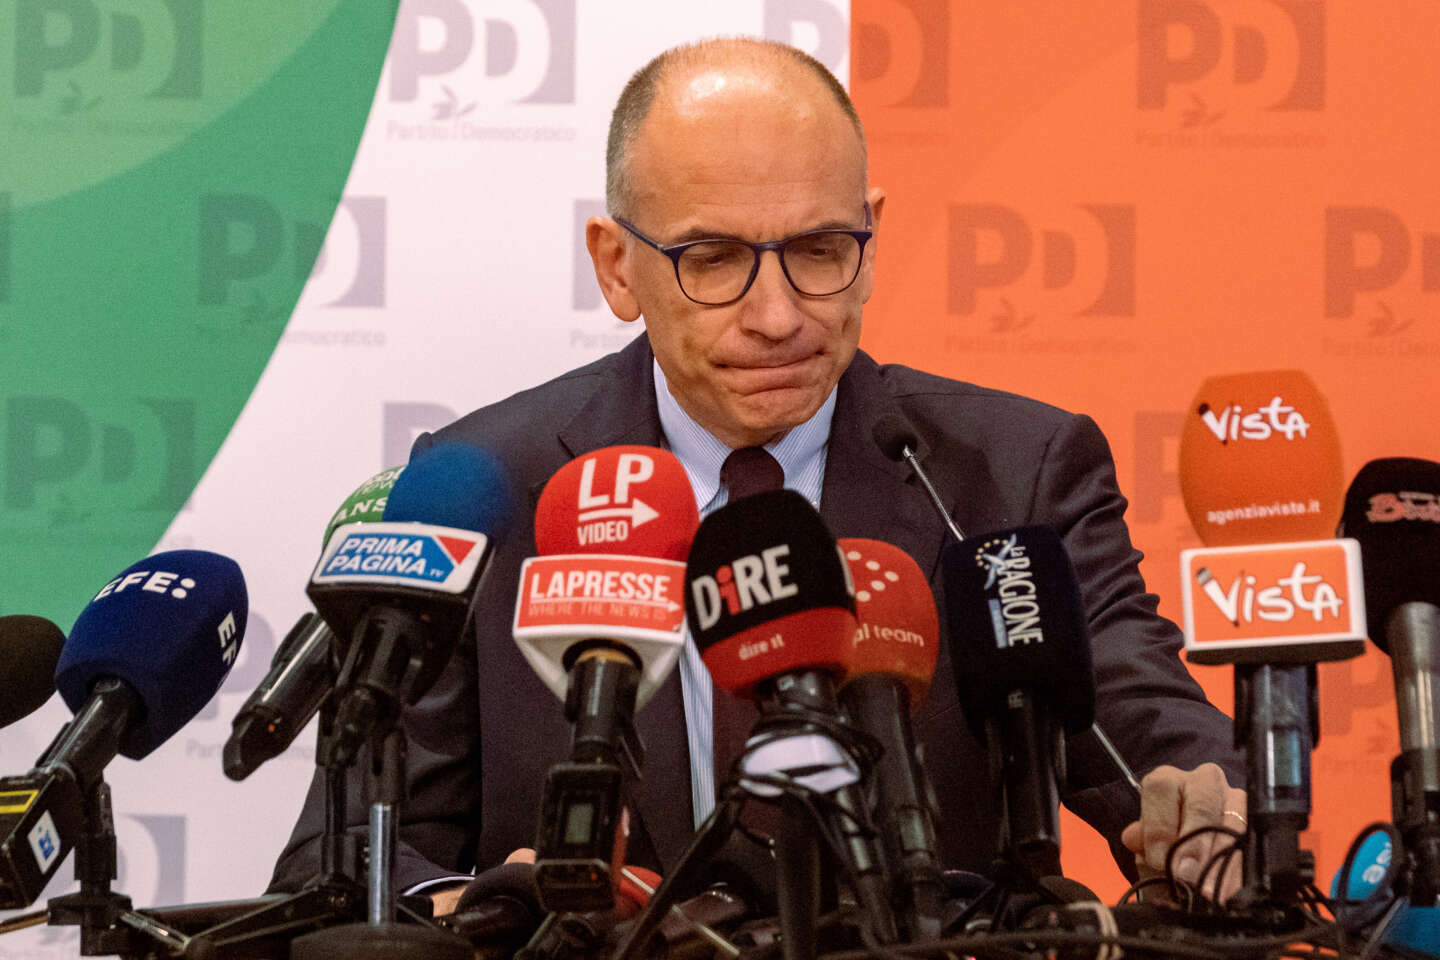 Dopo le elezioni in Italia e lo shock della sconfitta per la sinistra, il Pd è in crisi